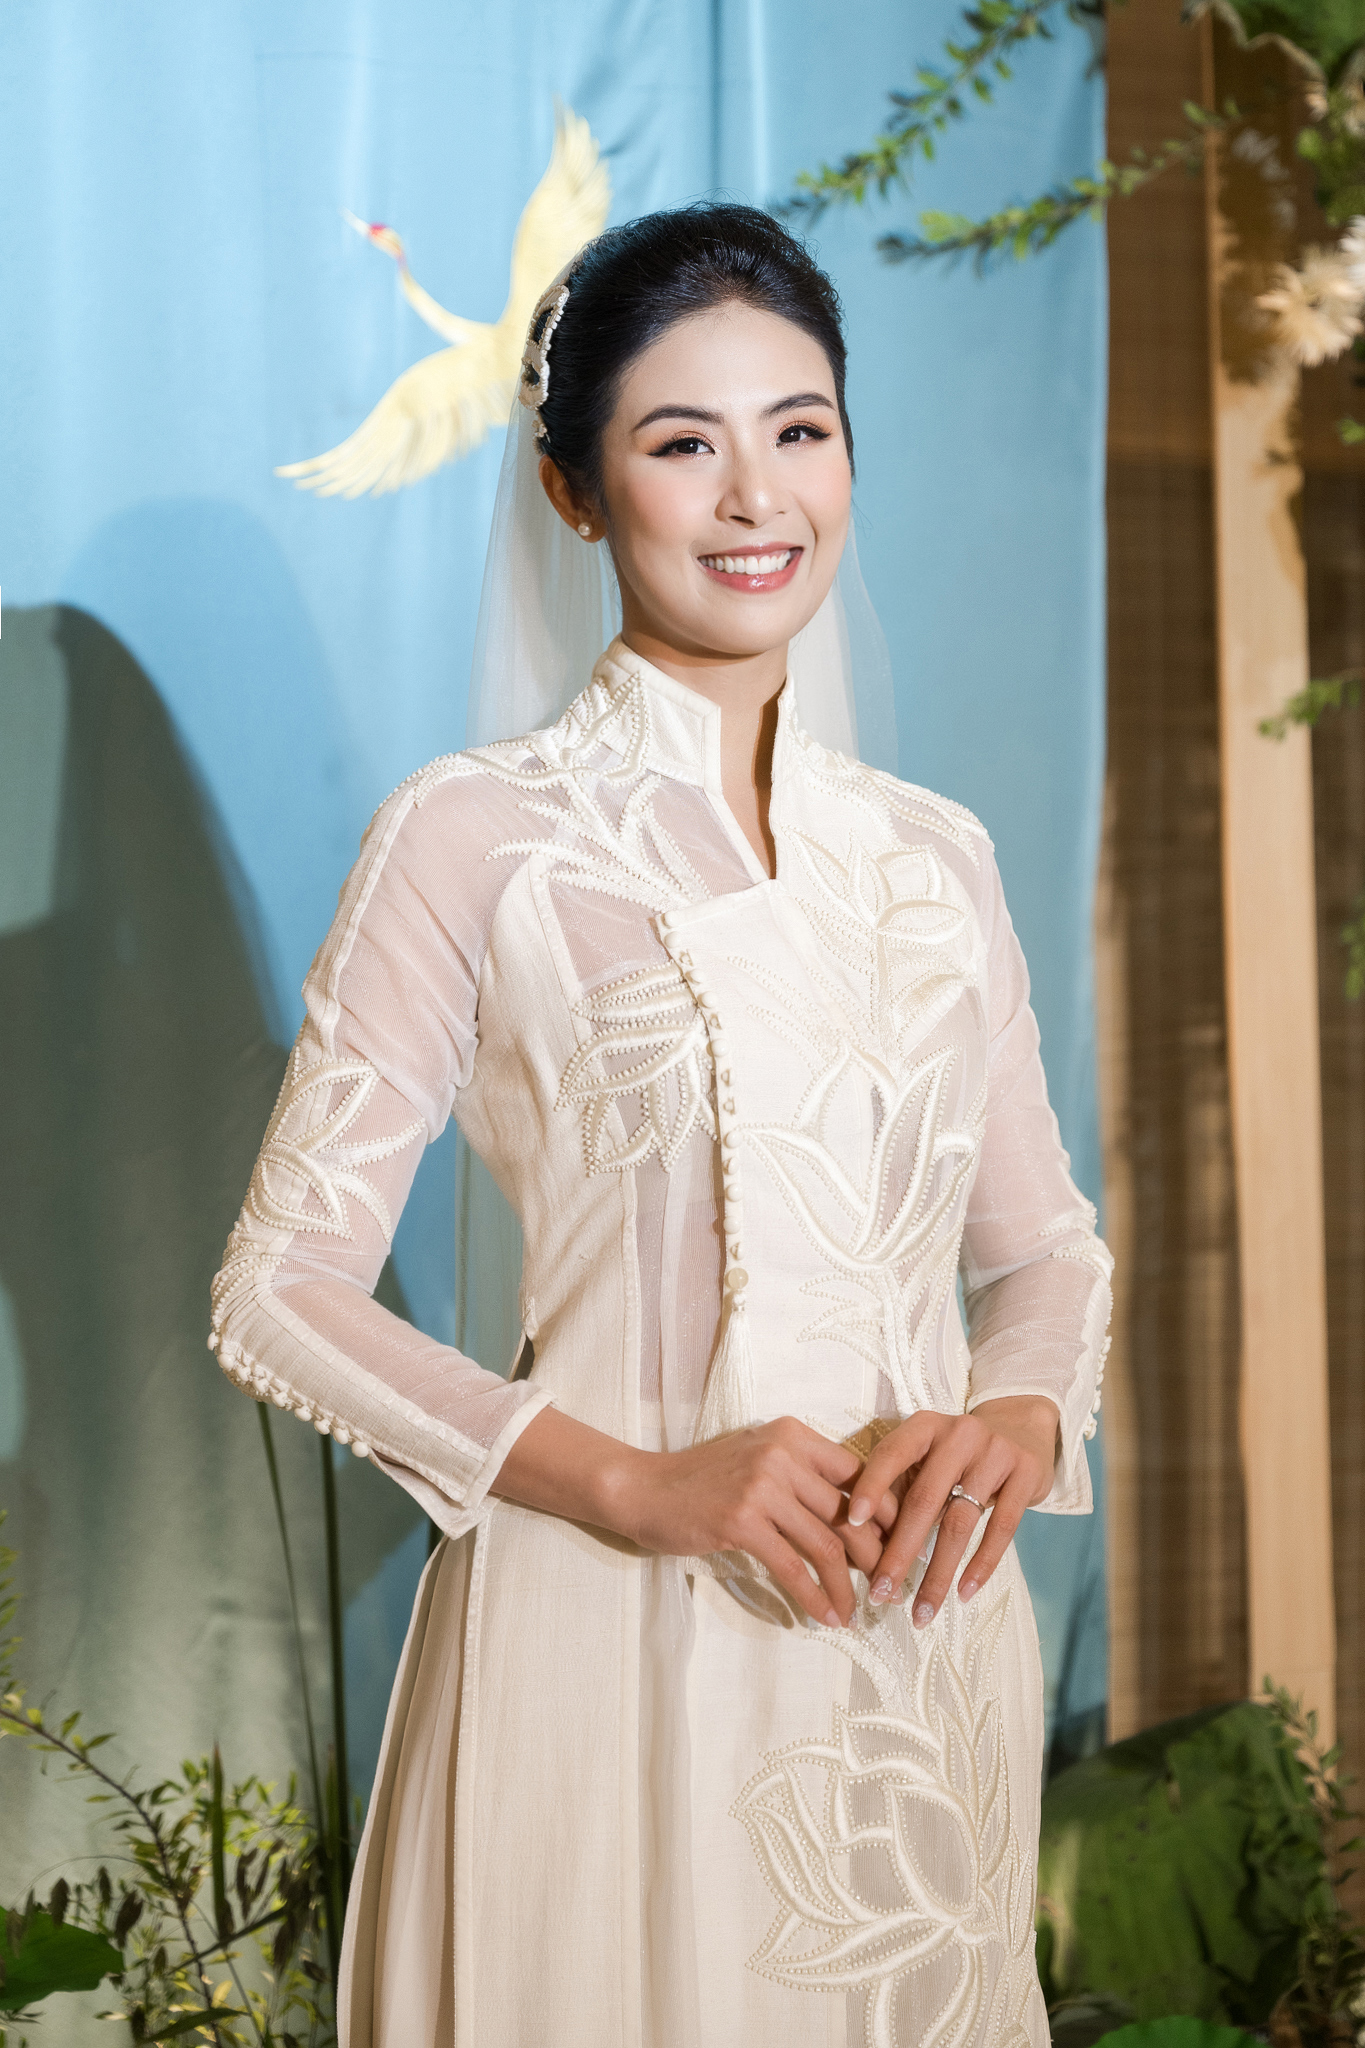 Lễ cưới của Hoa hậu Ngọc Hân: Cô dâu được chồng tặng quà bí mật, dàn mỹ nhân đổ bộ giữa không gian đẹp như mơ - Ảnh 12.